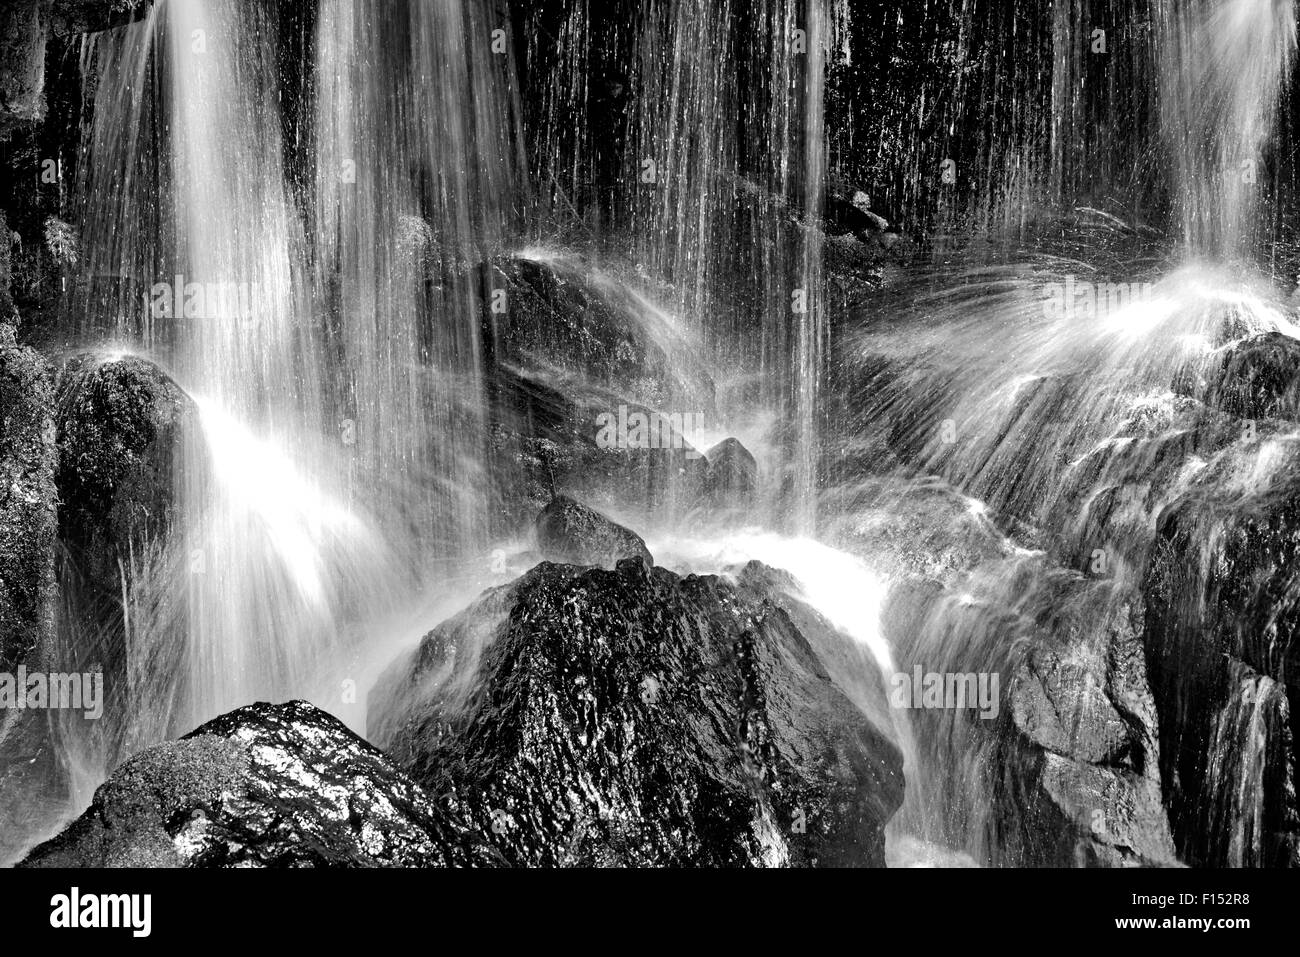 Germania, Foresta Nera: versione in bianco e nero di fresco a cascata la cascata Alb in Menzenschwand Foto Stock